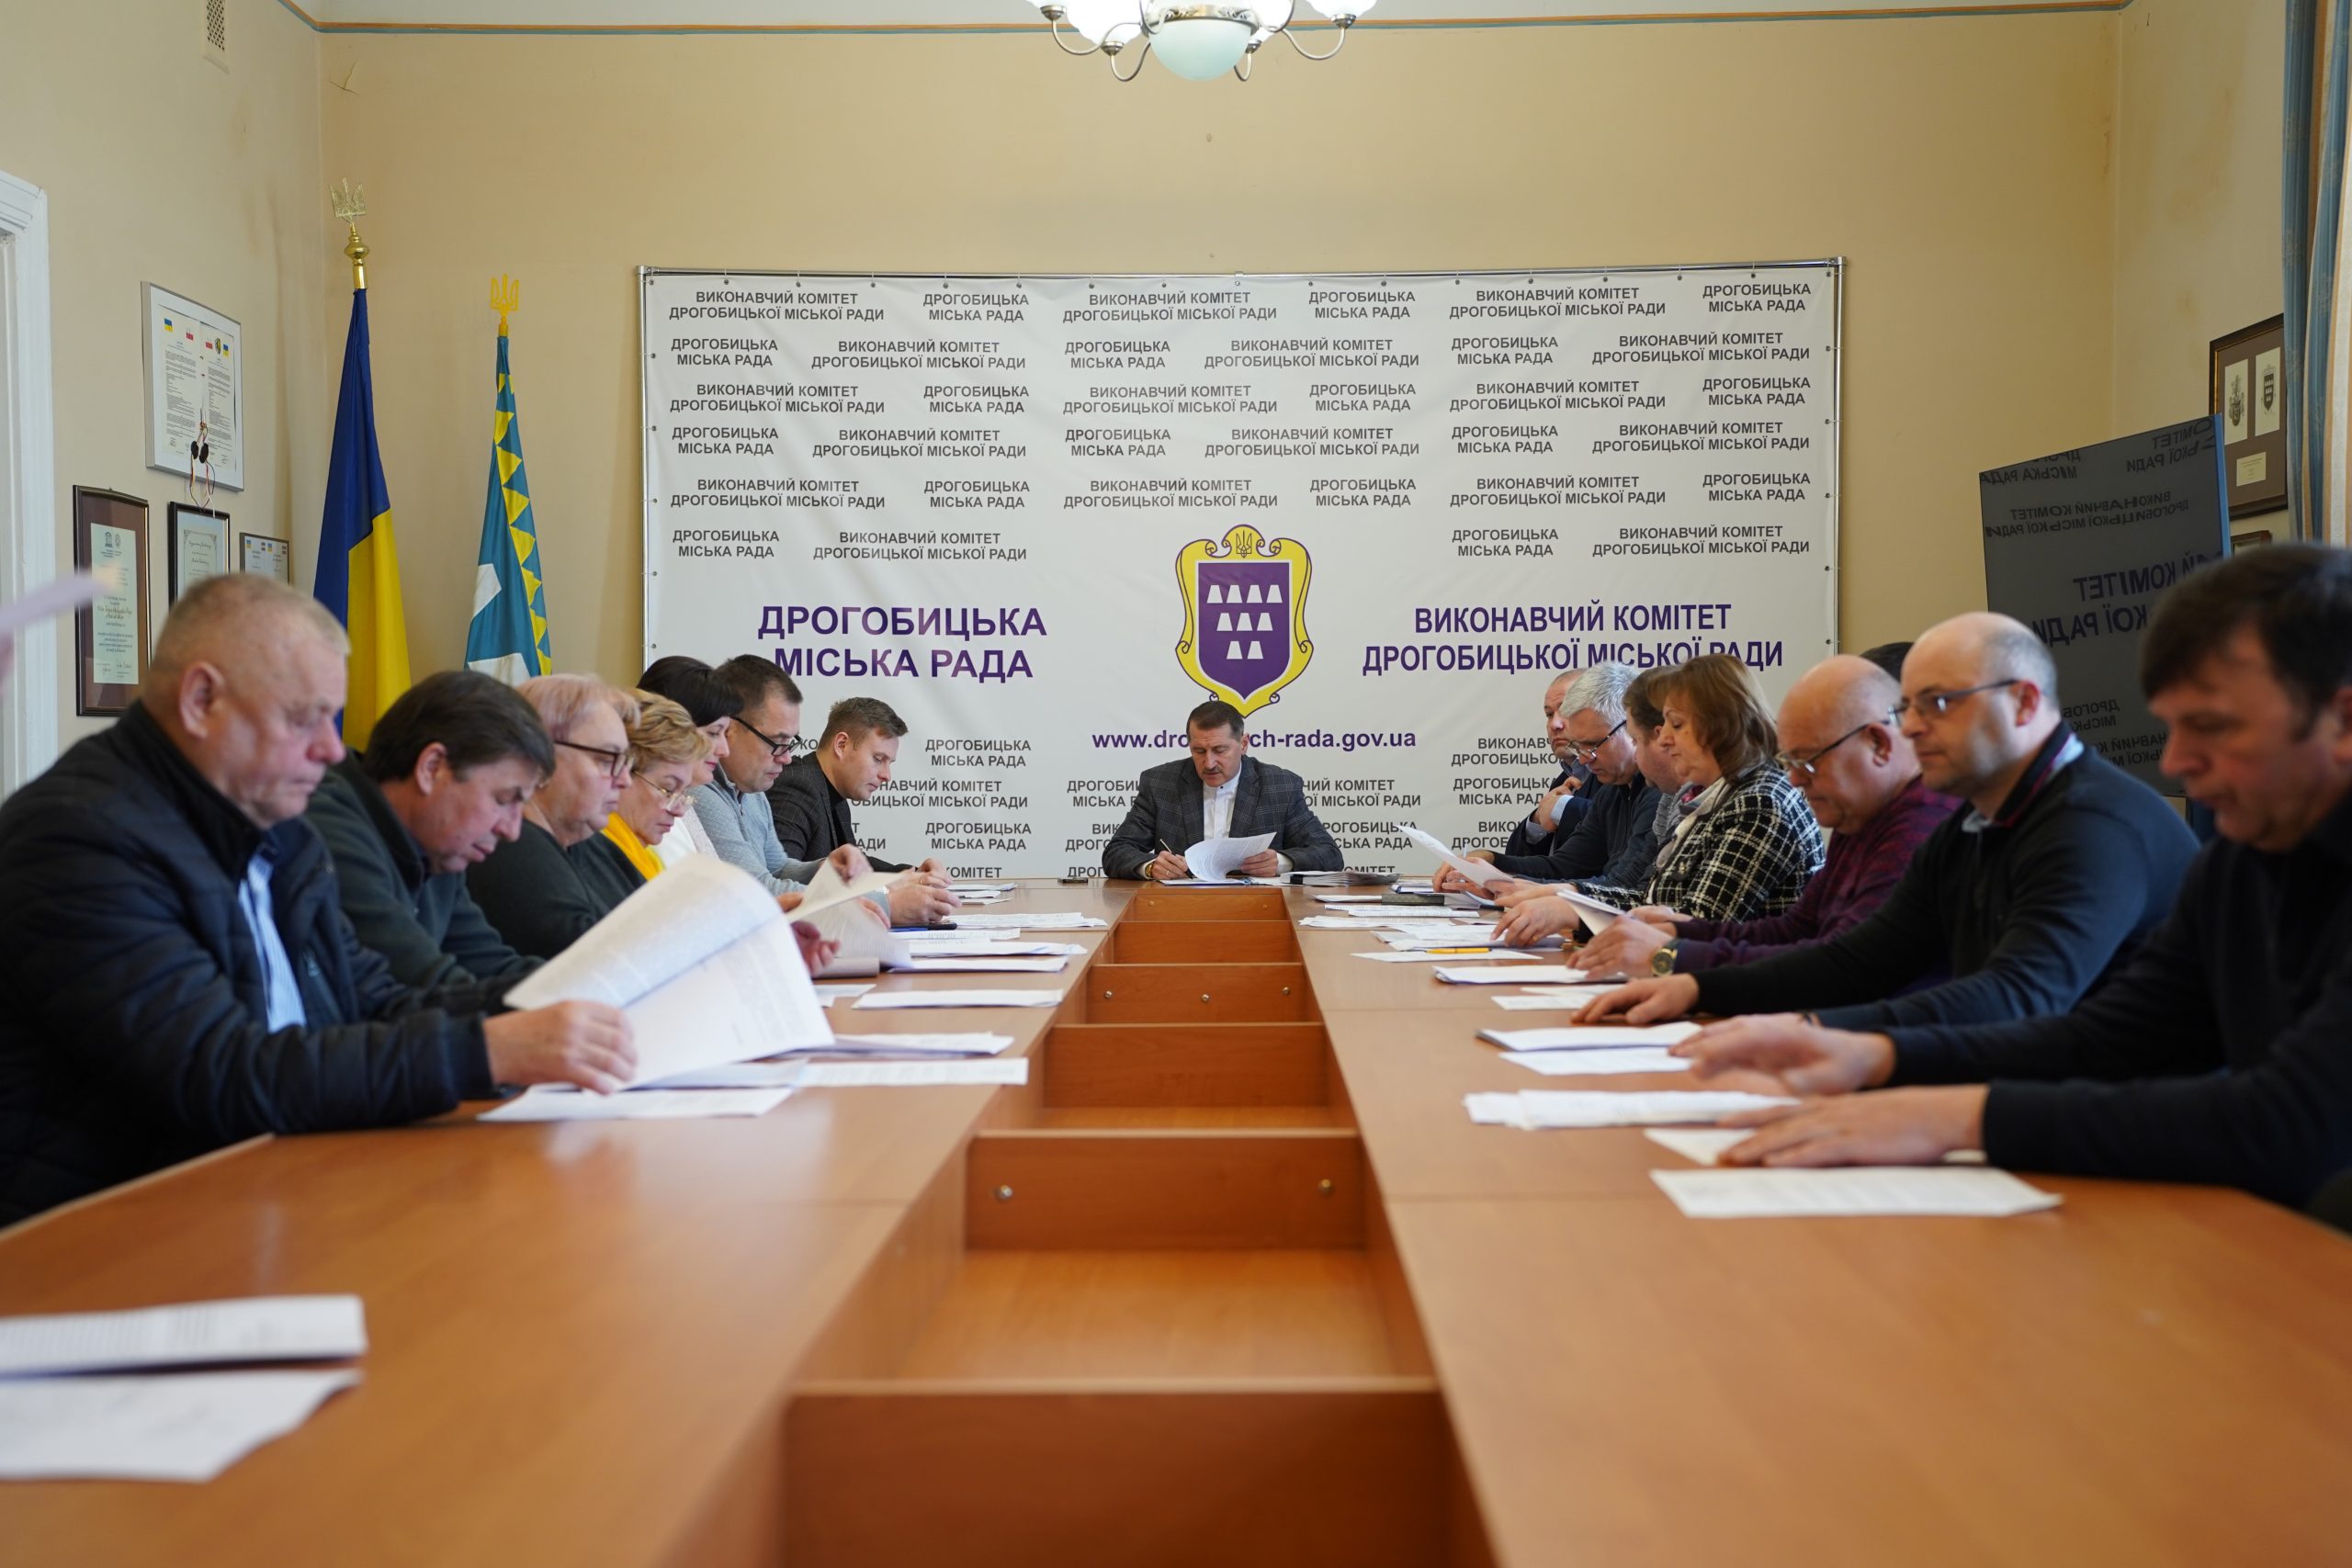 Відбулось чергове засідання виконавчого комітету Дрогобицької міської ради